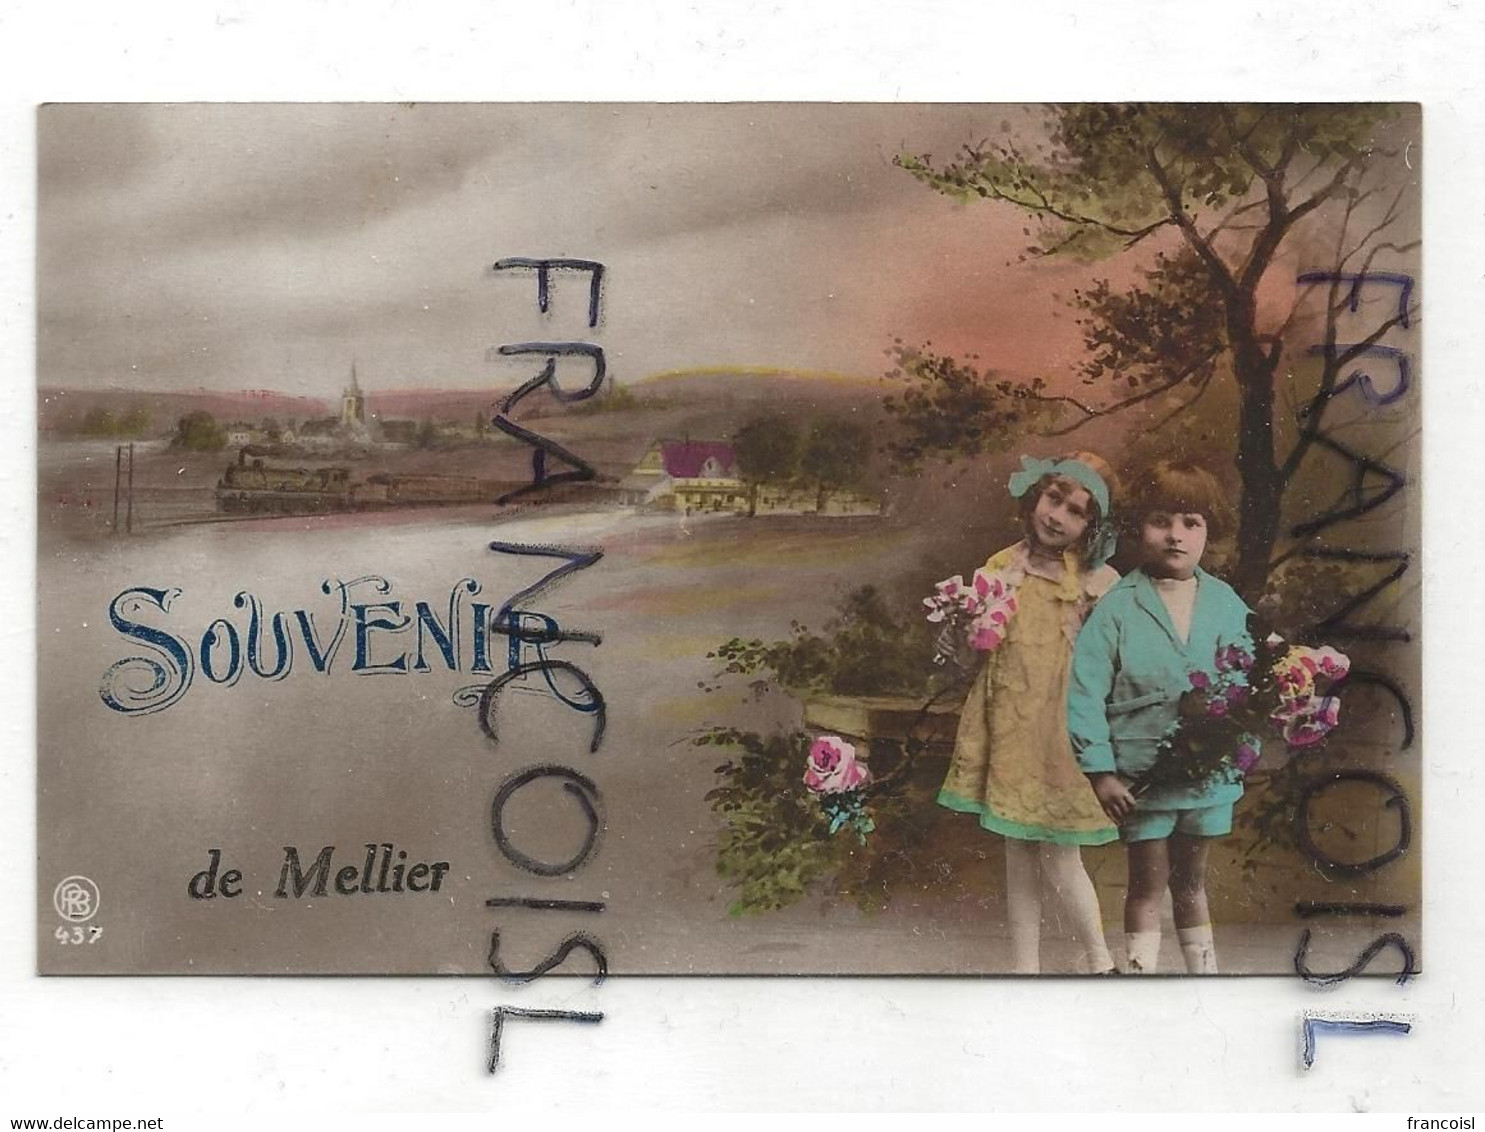 Souvenir De Mellier. Photographie Montage. Deux Enfants, Roses, Train Vapeur - Leglise